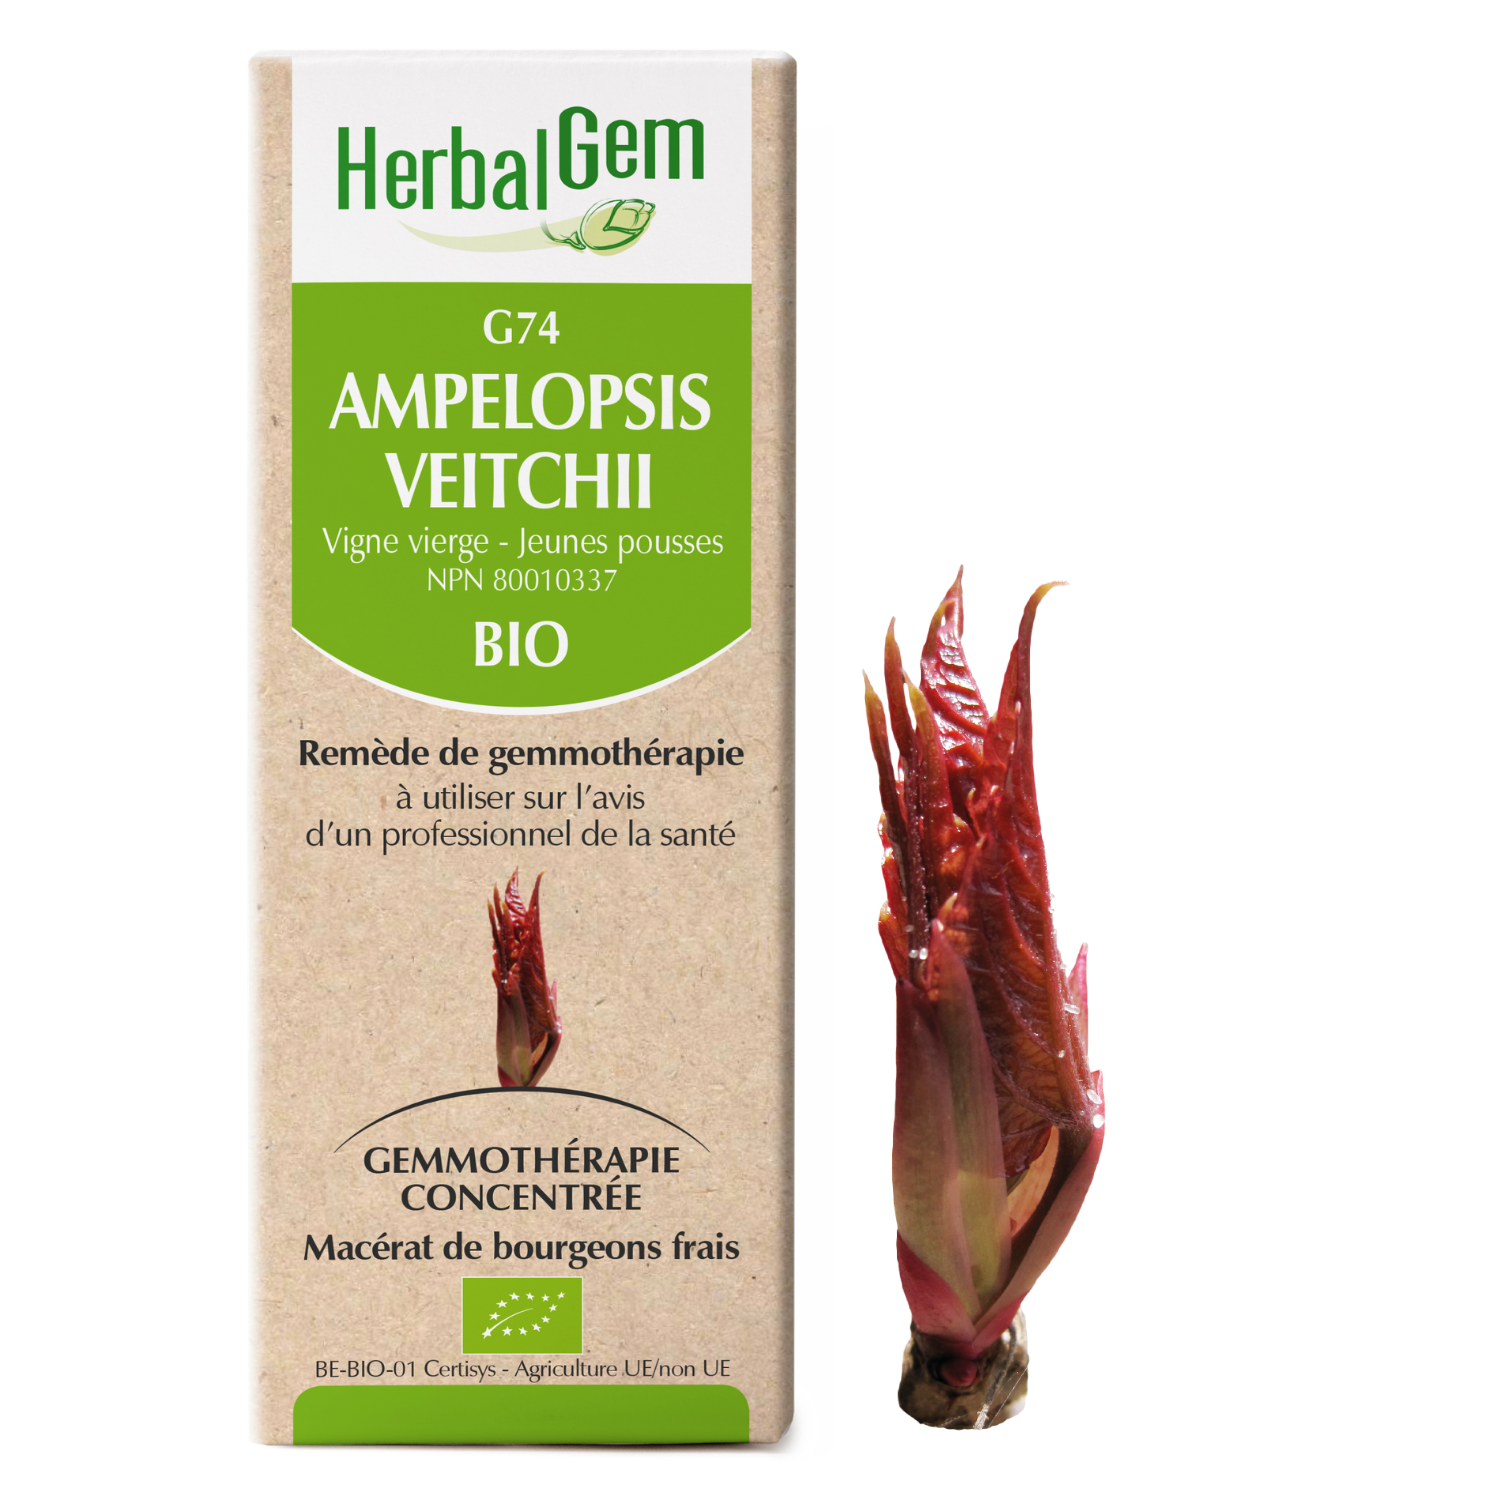 Ampelopsis veitchii (Virgin vine) G74